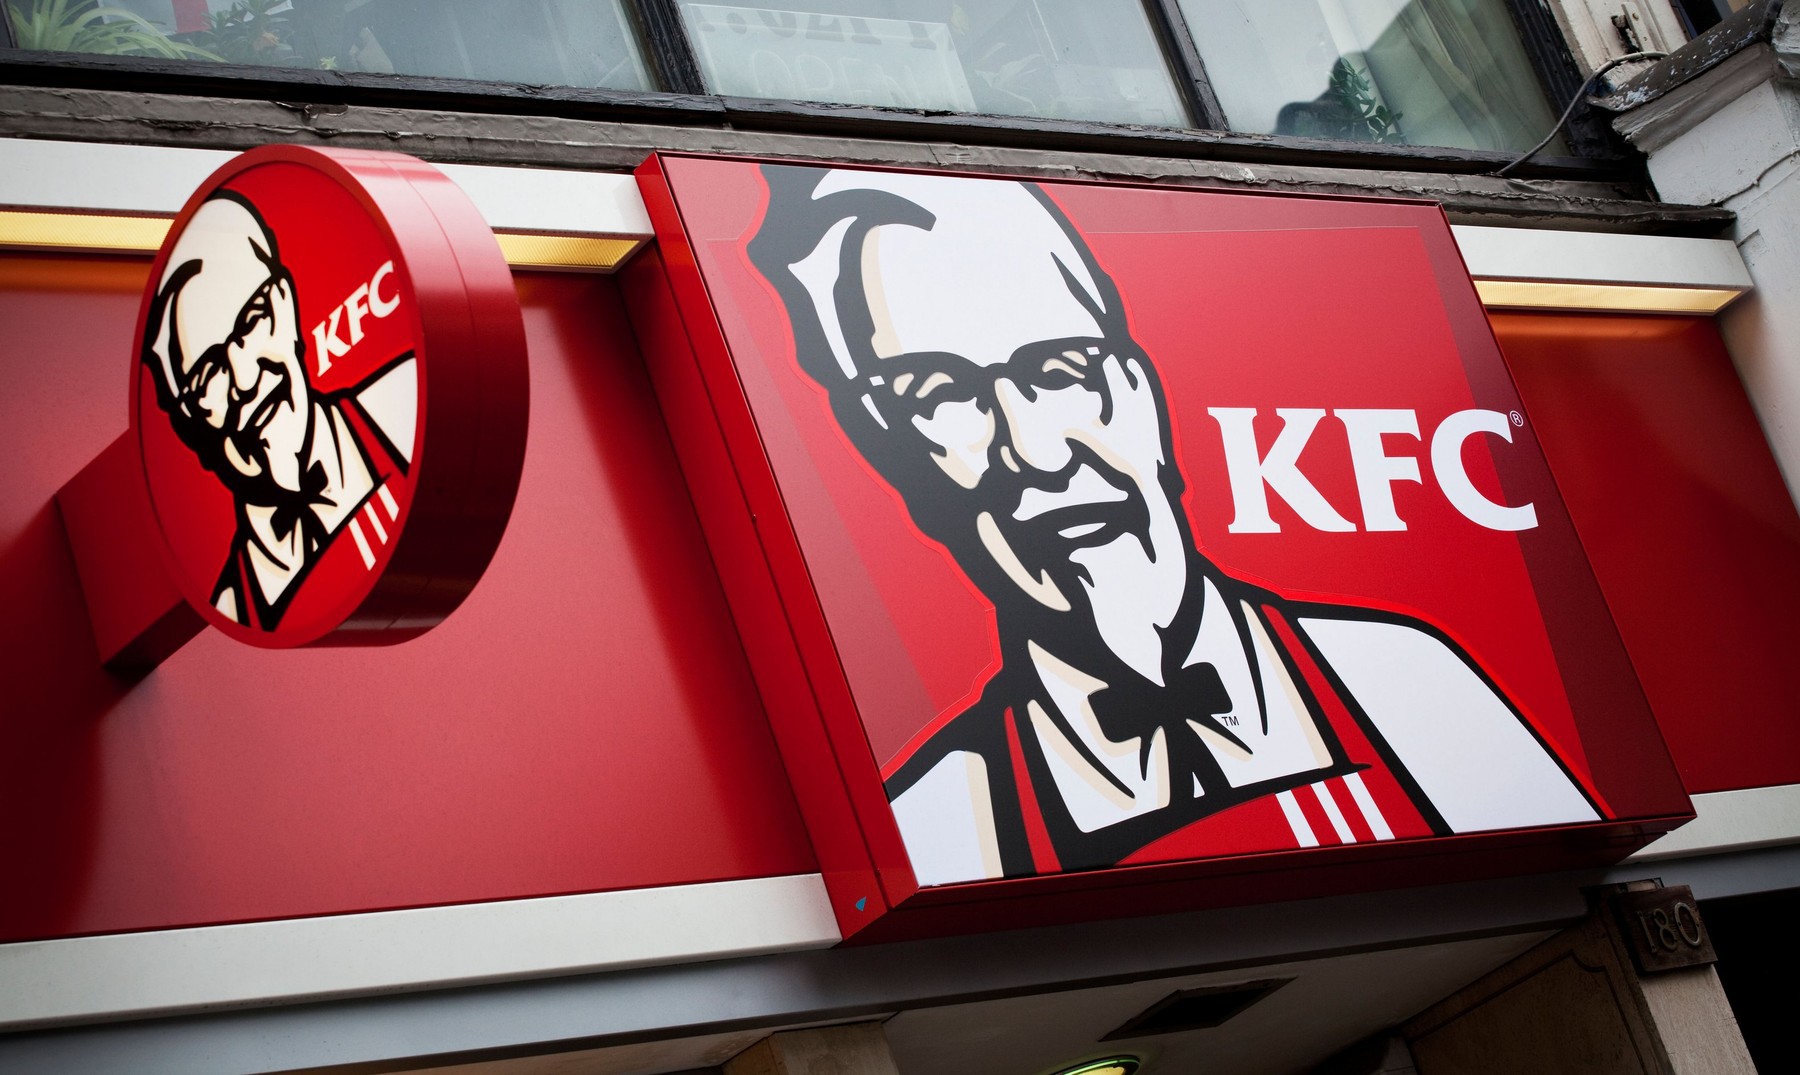 Sphera Franchise Group, operatorul în sistem de franciză al lanţurilor KFC, Pizza Hut şi Taco Bell în România, deschide al patrulea restaurant KFC în Timişoara